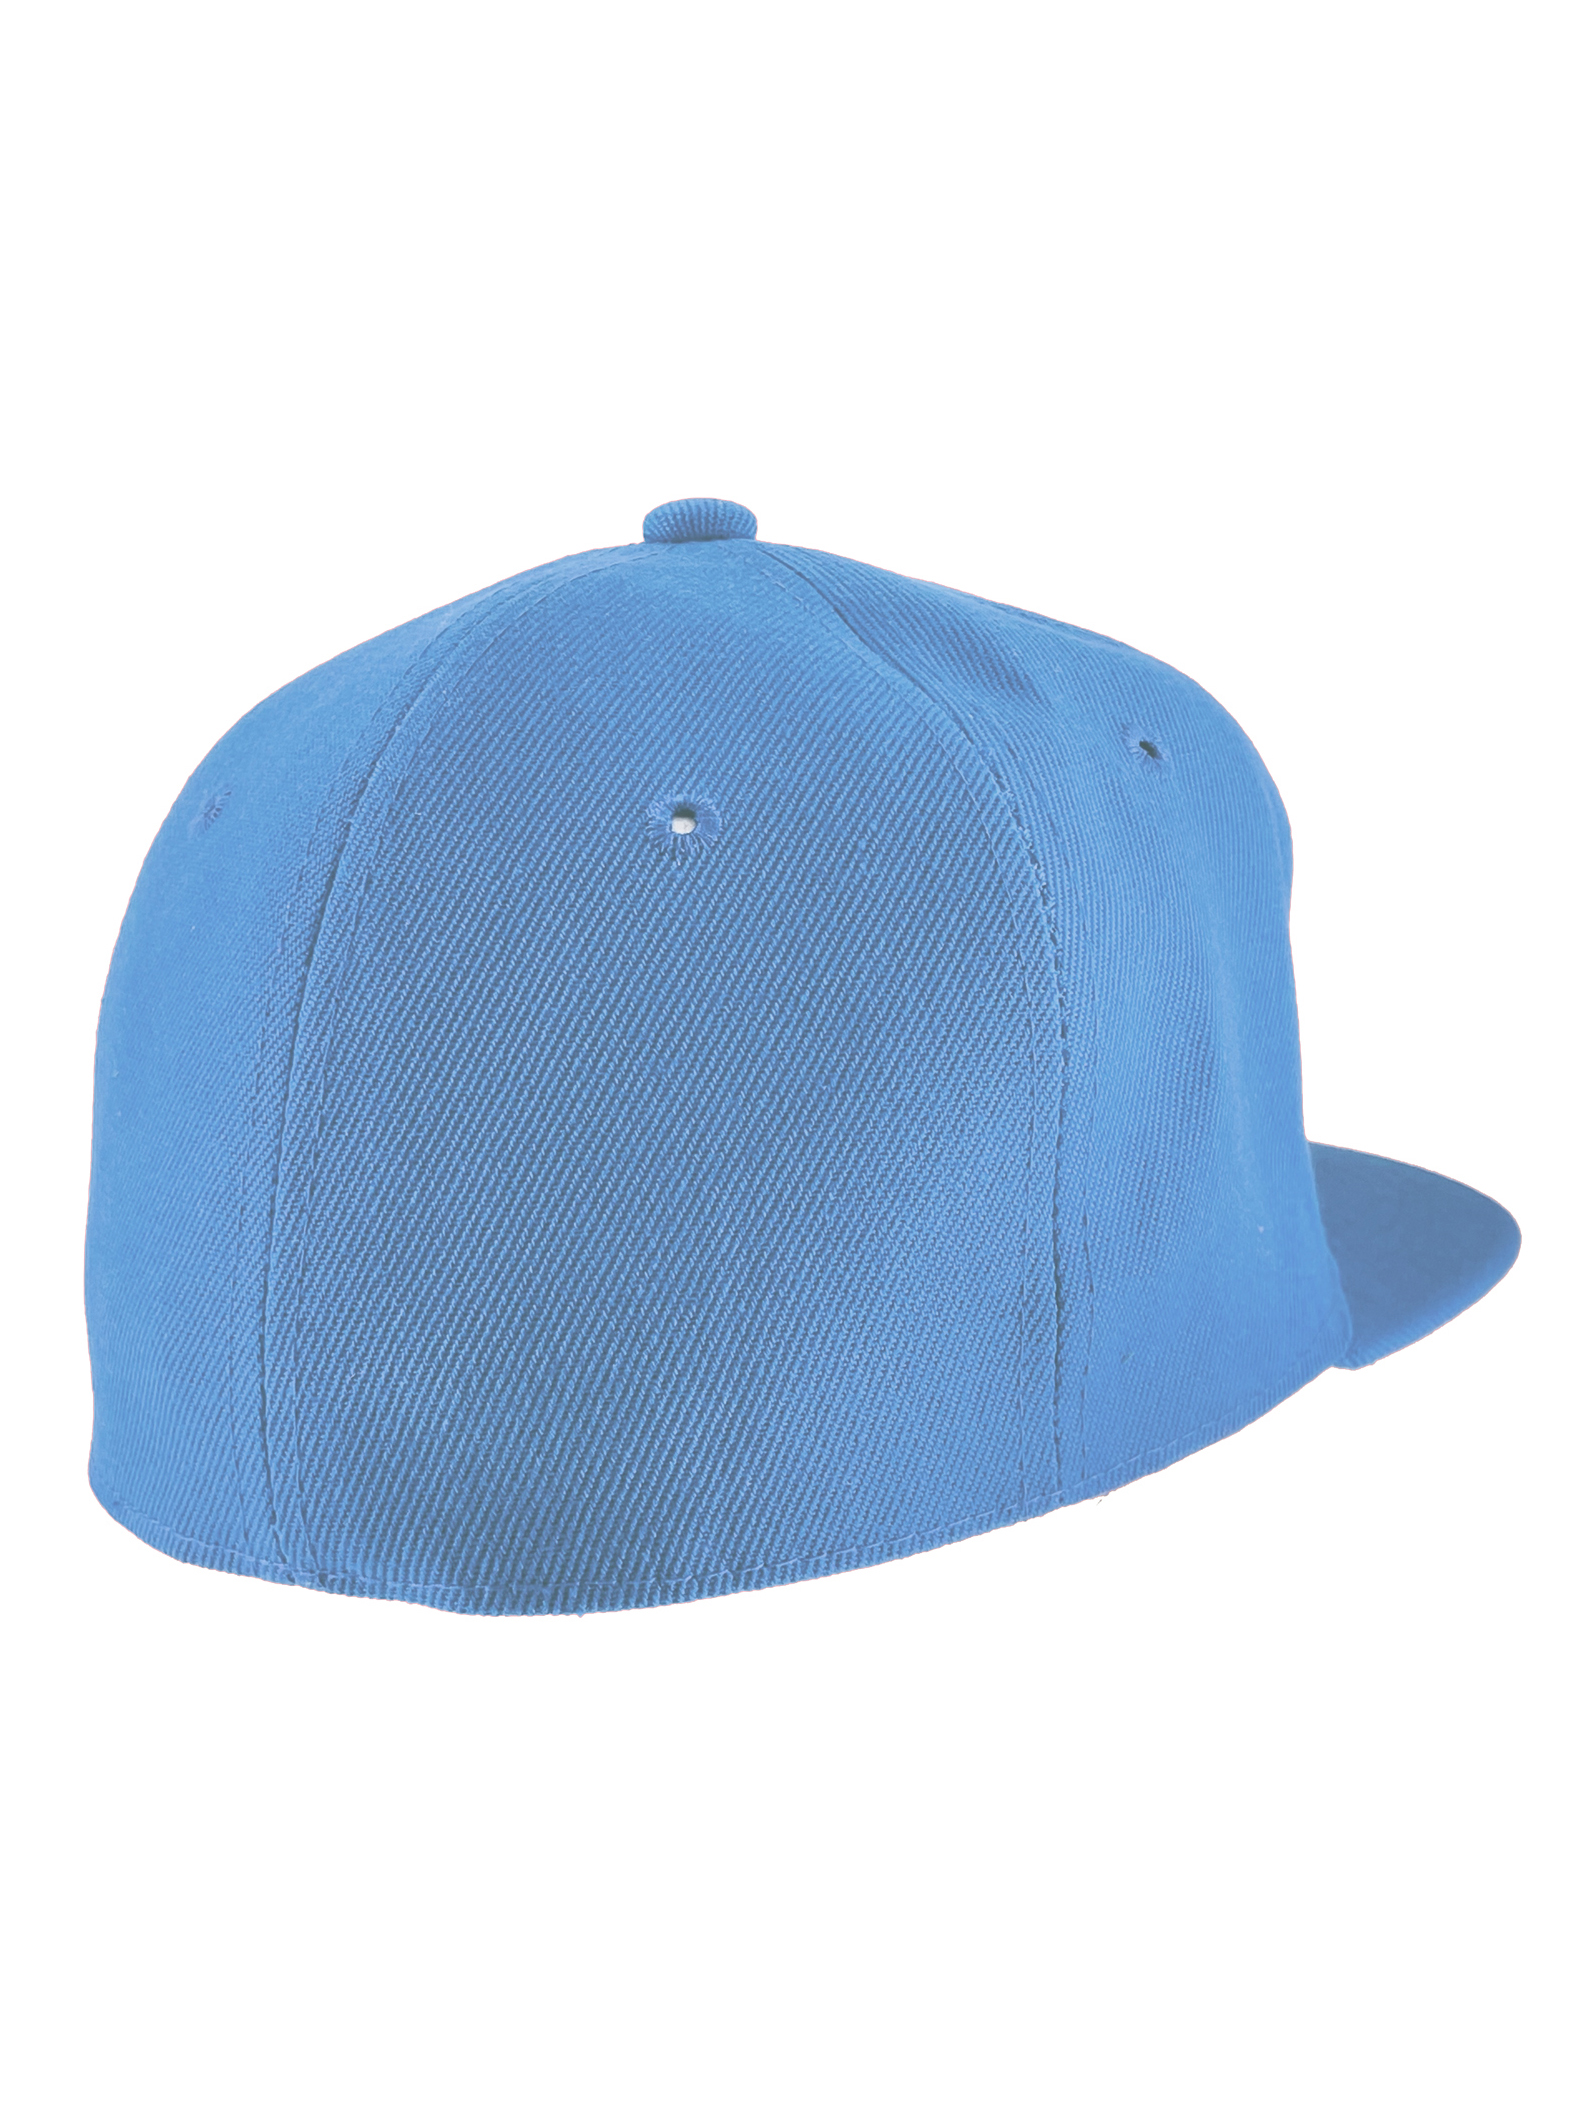 Top Headwear Plain Flat Bill Fitted Hat, Sky Blue 7 3/4 - image 3 of 4